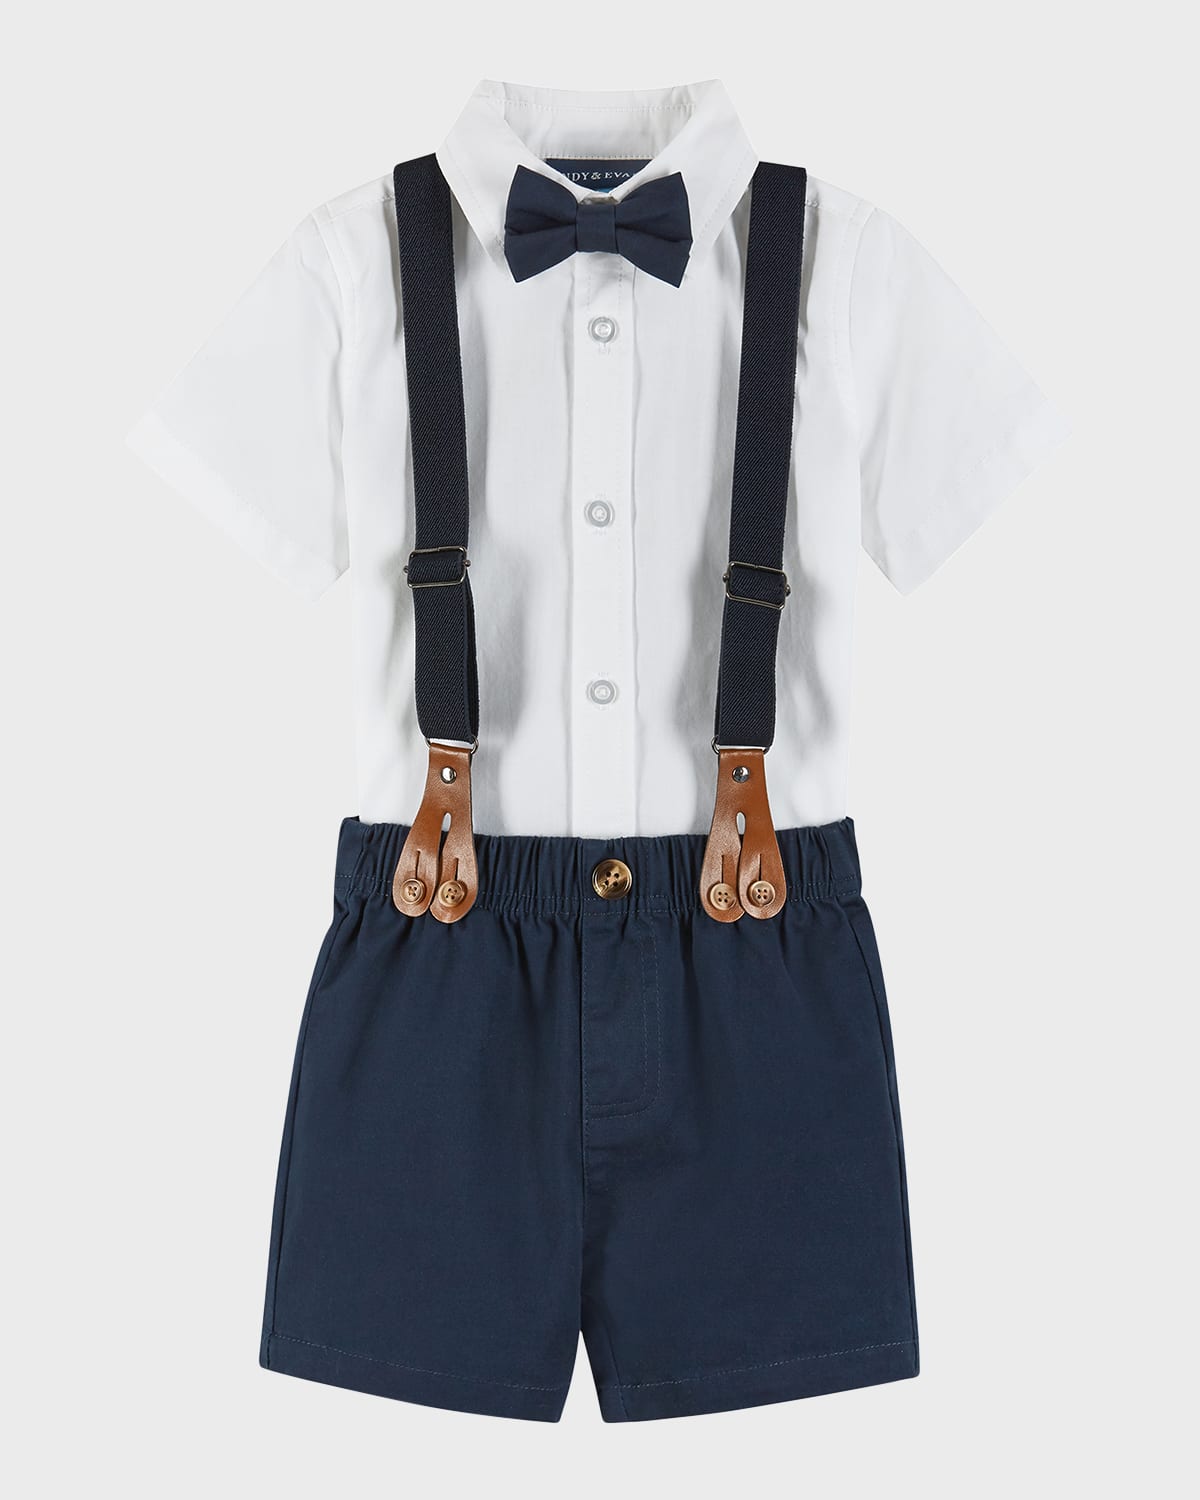 Andy & Evan Kids' Boy's Four-piece Suspender Set In White